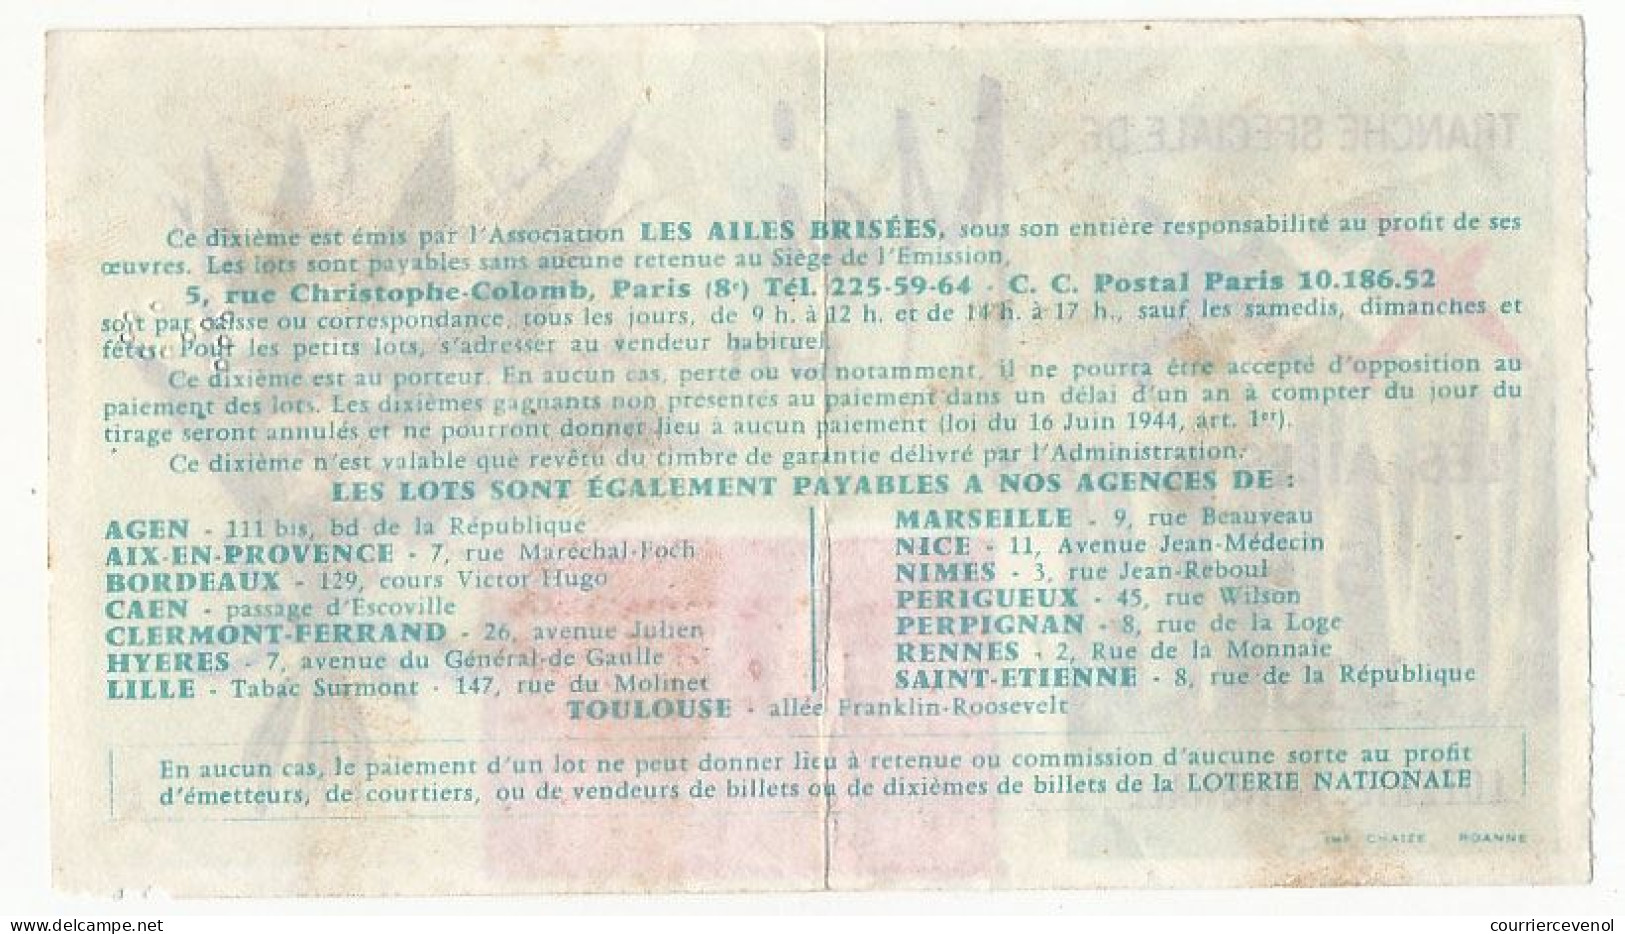 FRANCE - Loterie Nationale - Tranche Spéciale De Mai - Les Ailes Brisées - 1/10ème 1971 - Biglietti Della Lotteria